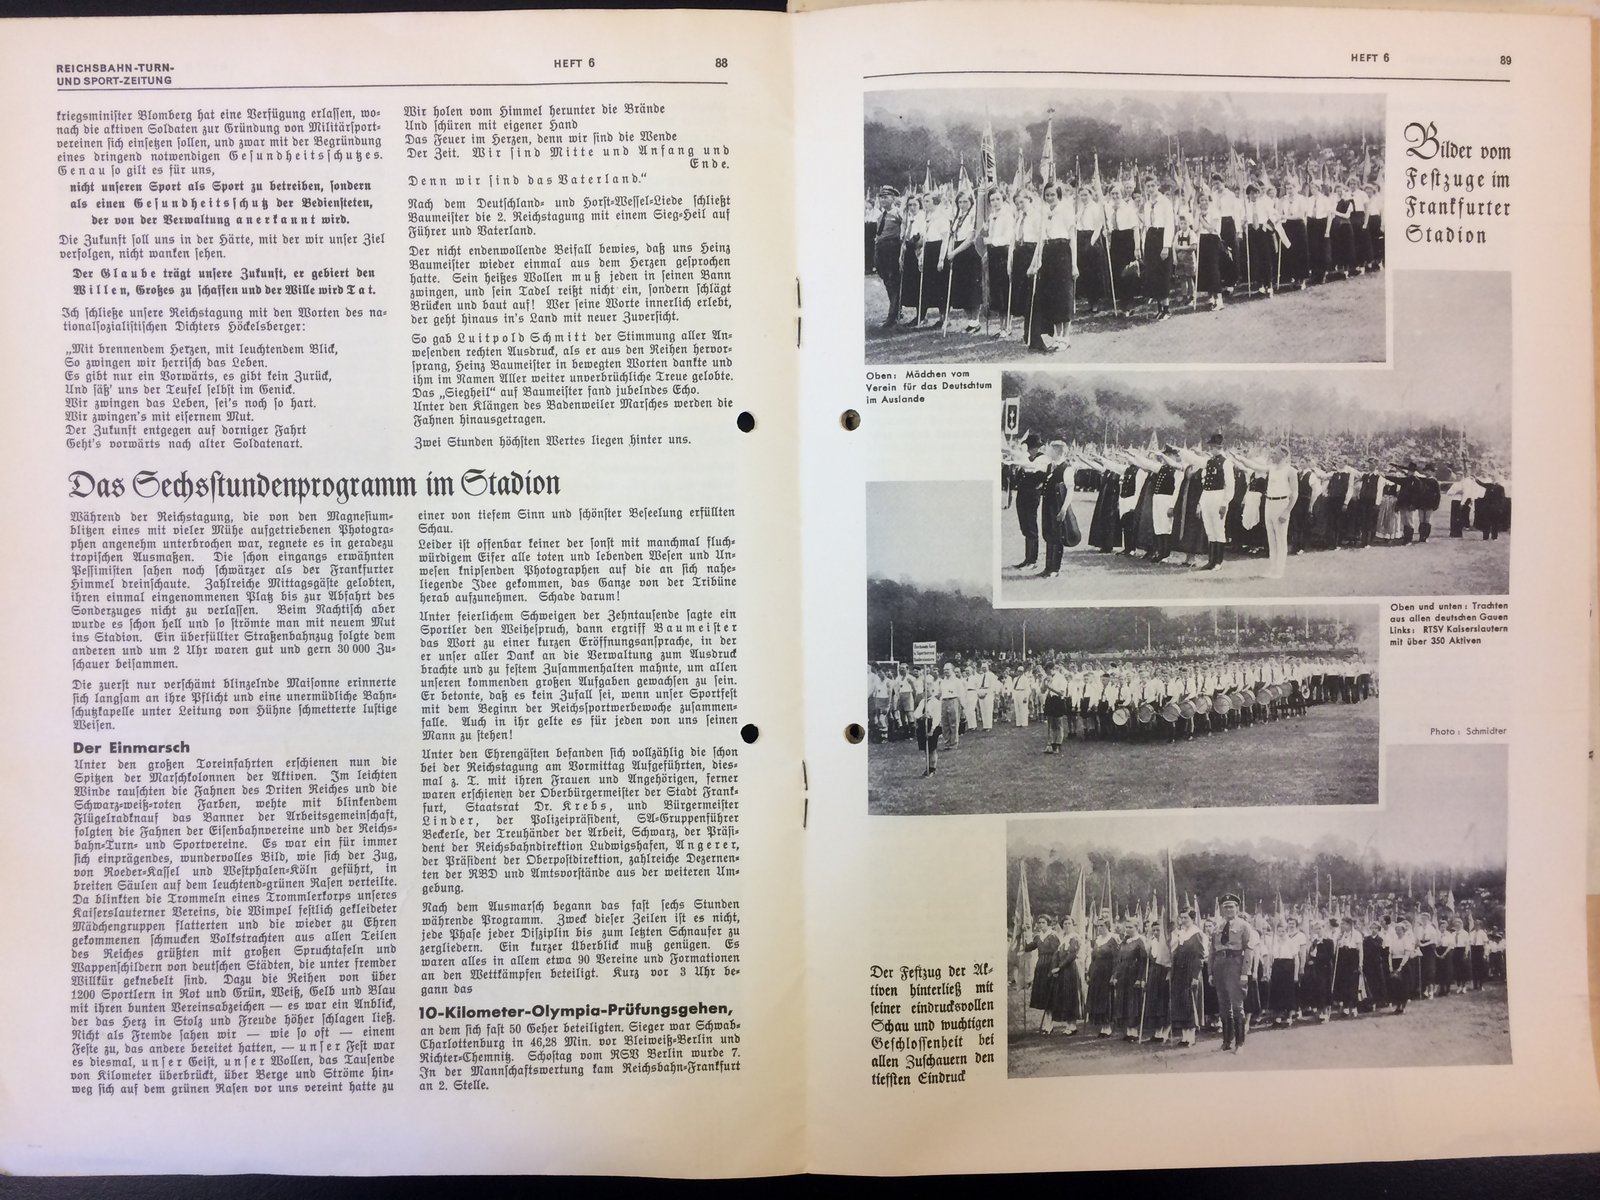 Festschrift Seite 88-89 ca. 1935